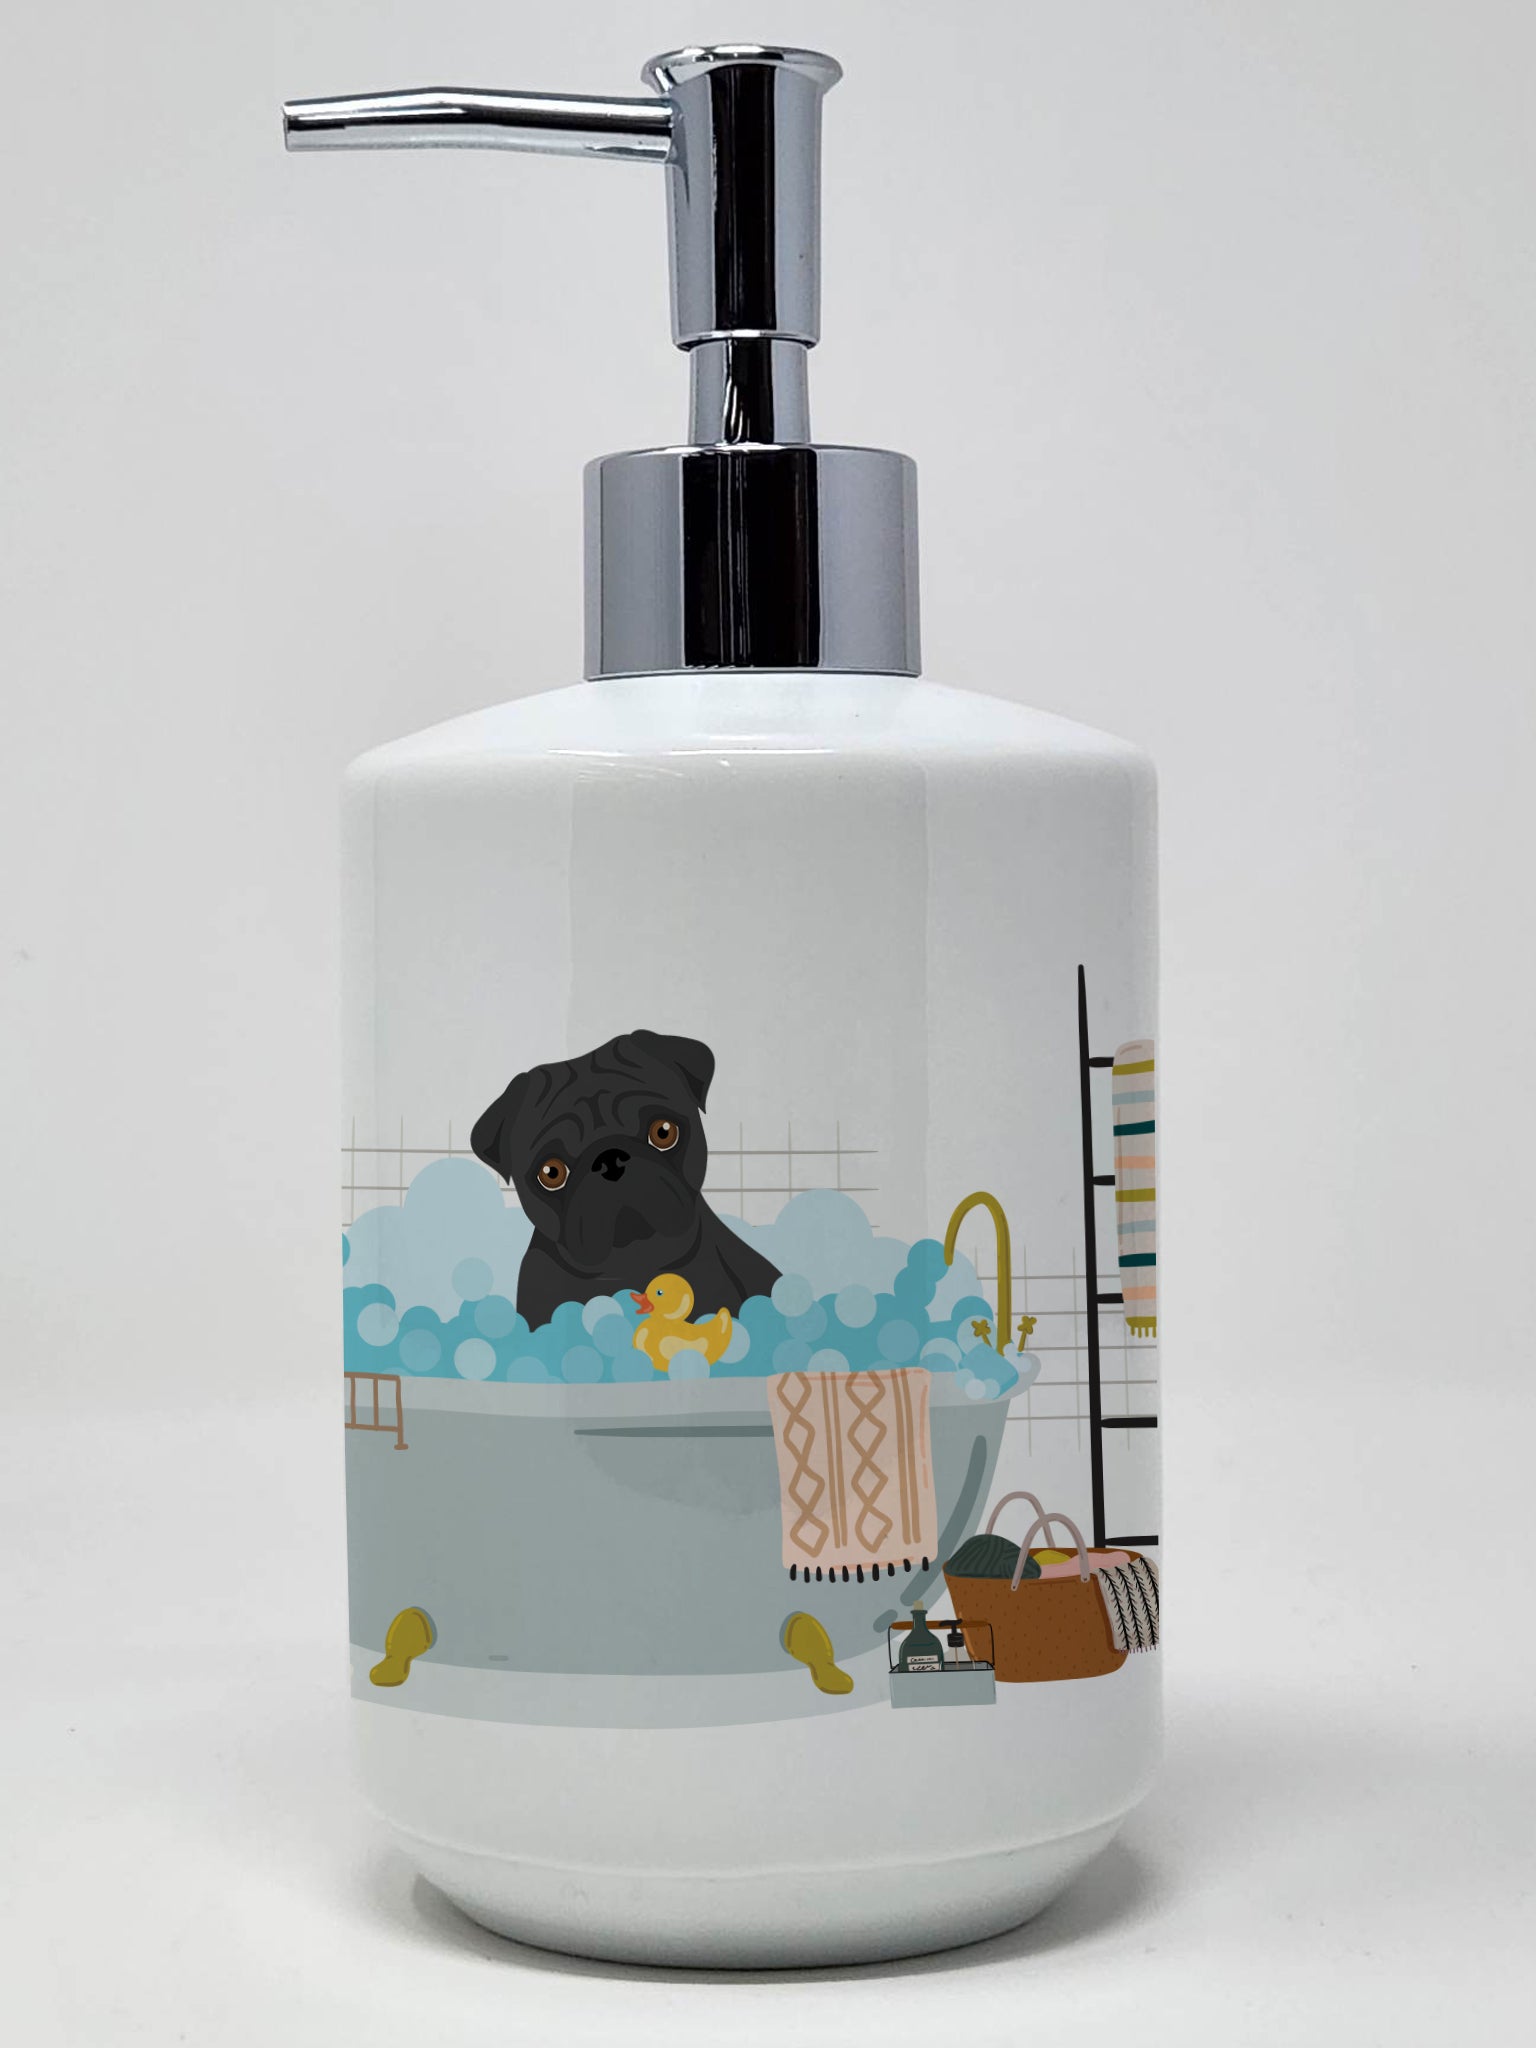 Buy this Black Pug Ceramic Soap Dispenser